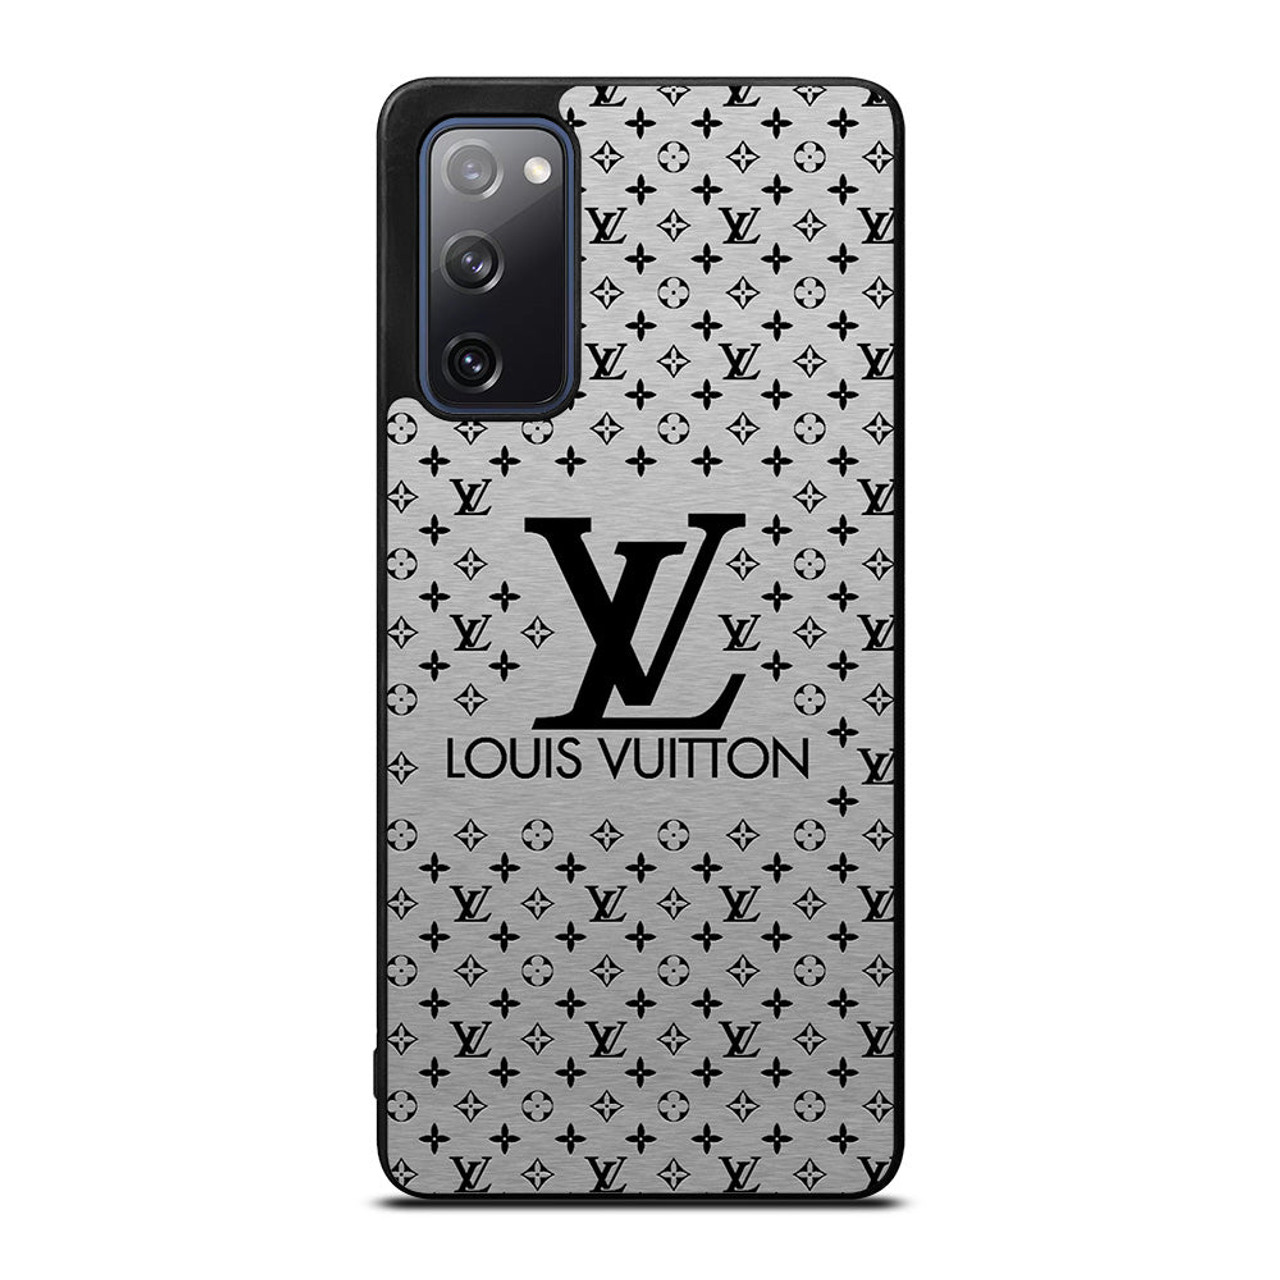 LOUIS VUITTON 1 Samsung Galaxy S20 FE Case Cover